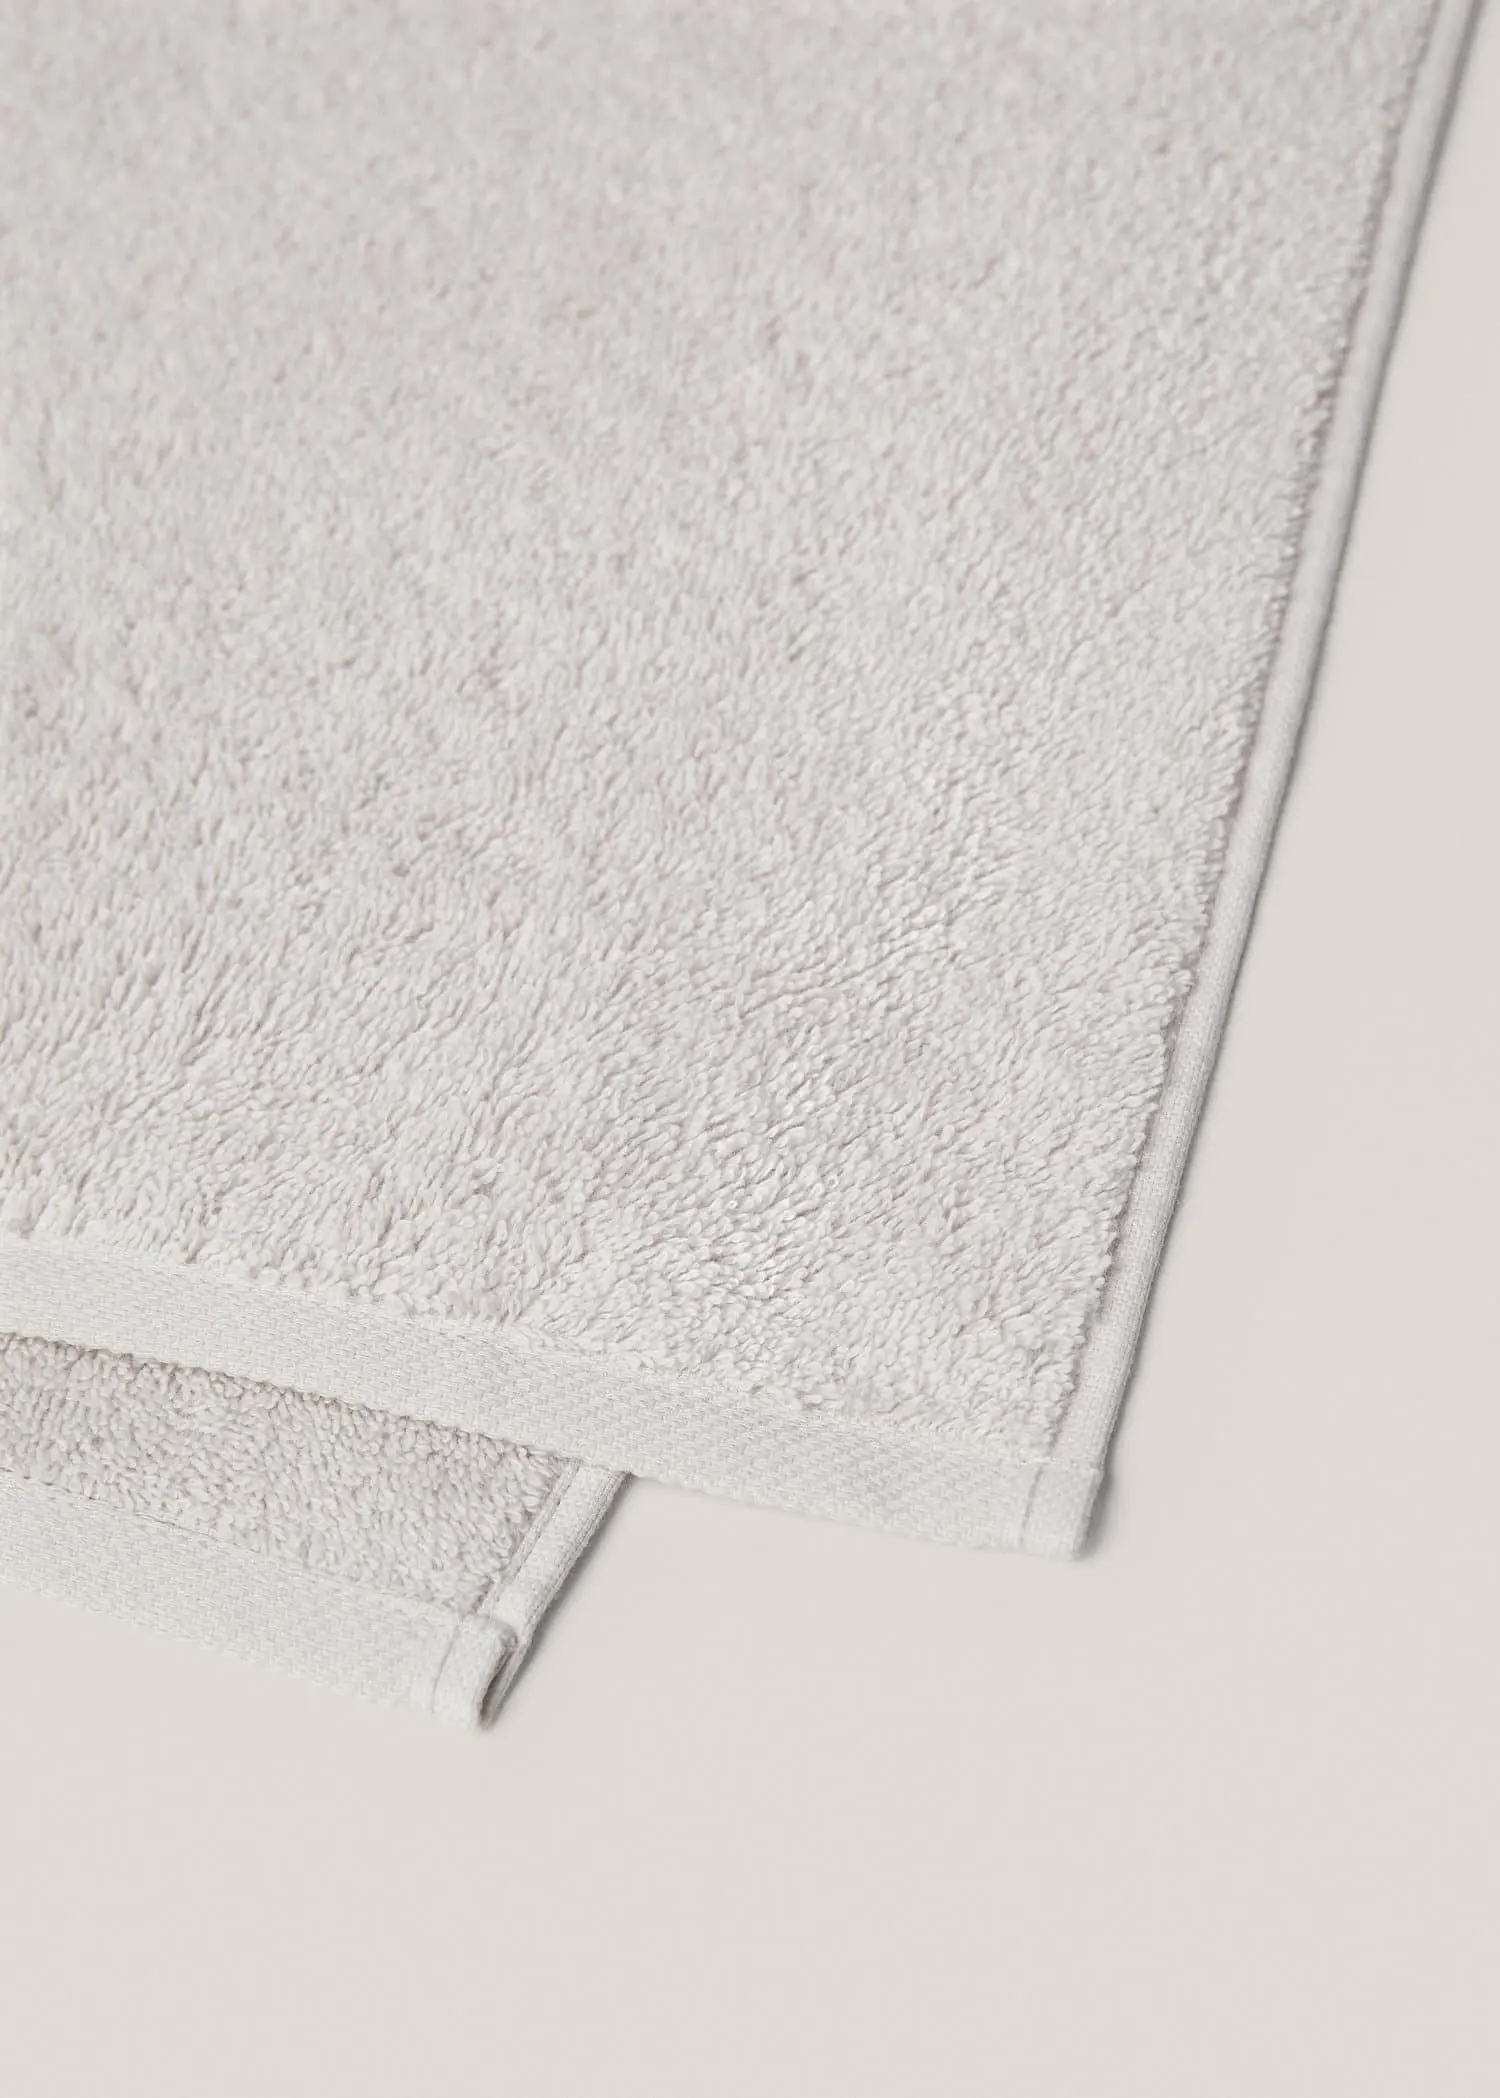 Mango 600gr/m2 cotton face towel 30x50cm. 2